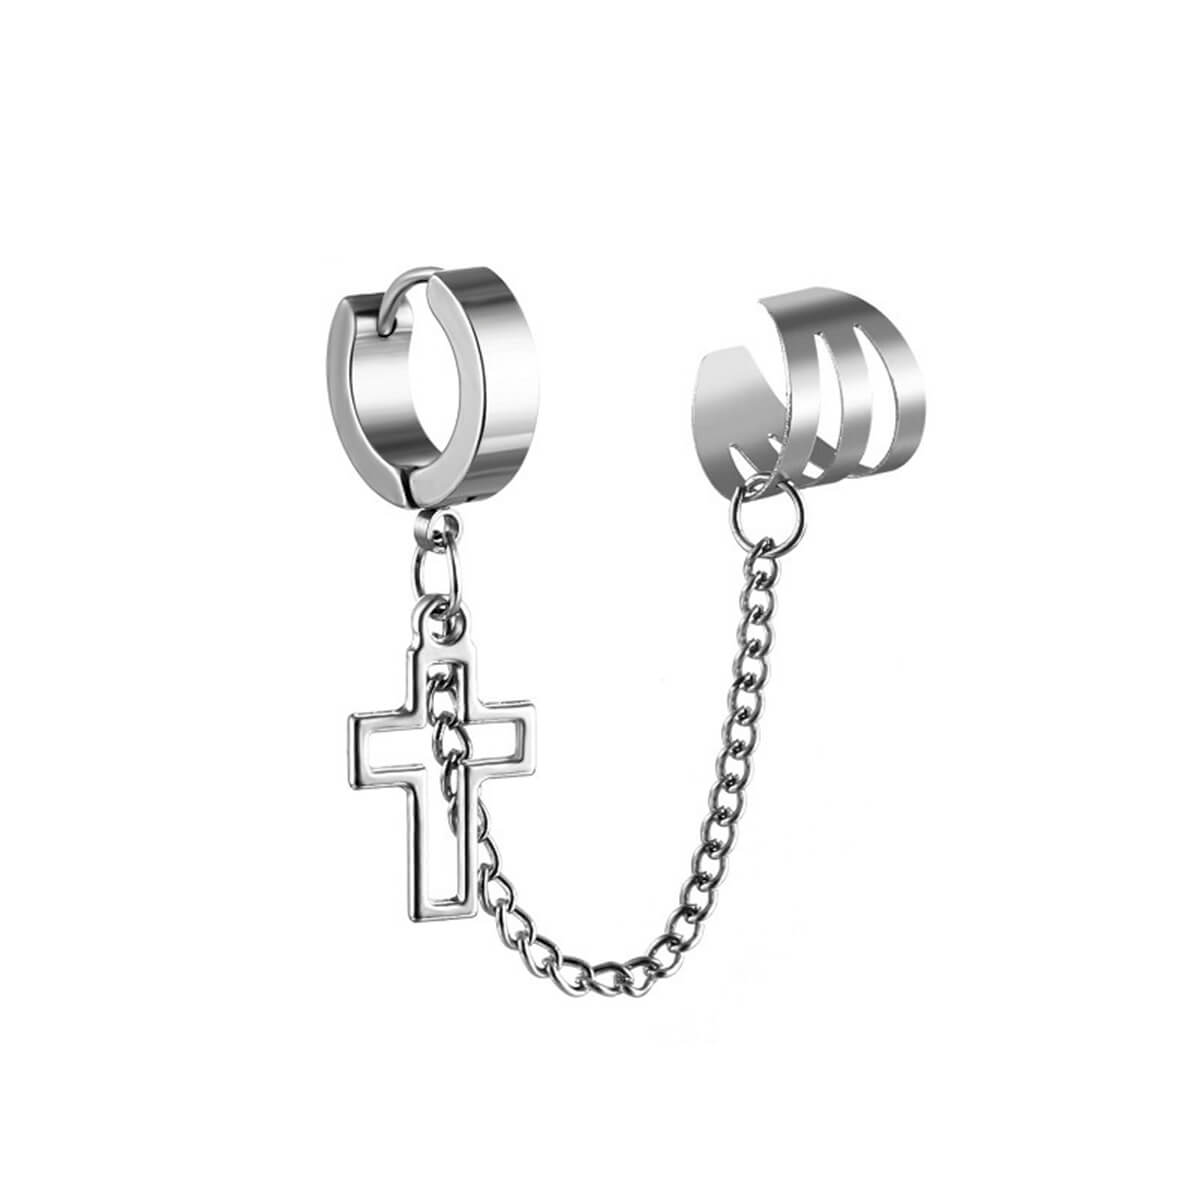 Second ear earring ear cuff cross pendant (Steel 316L)